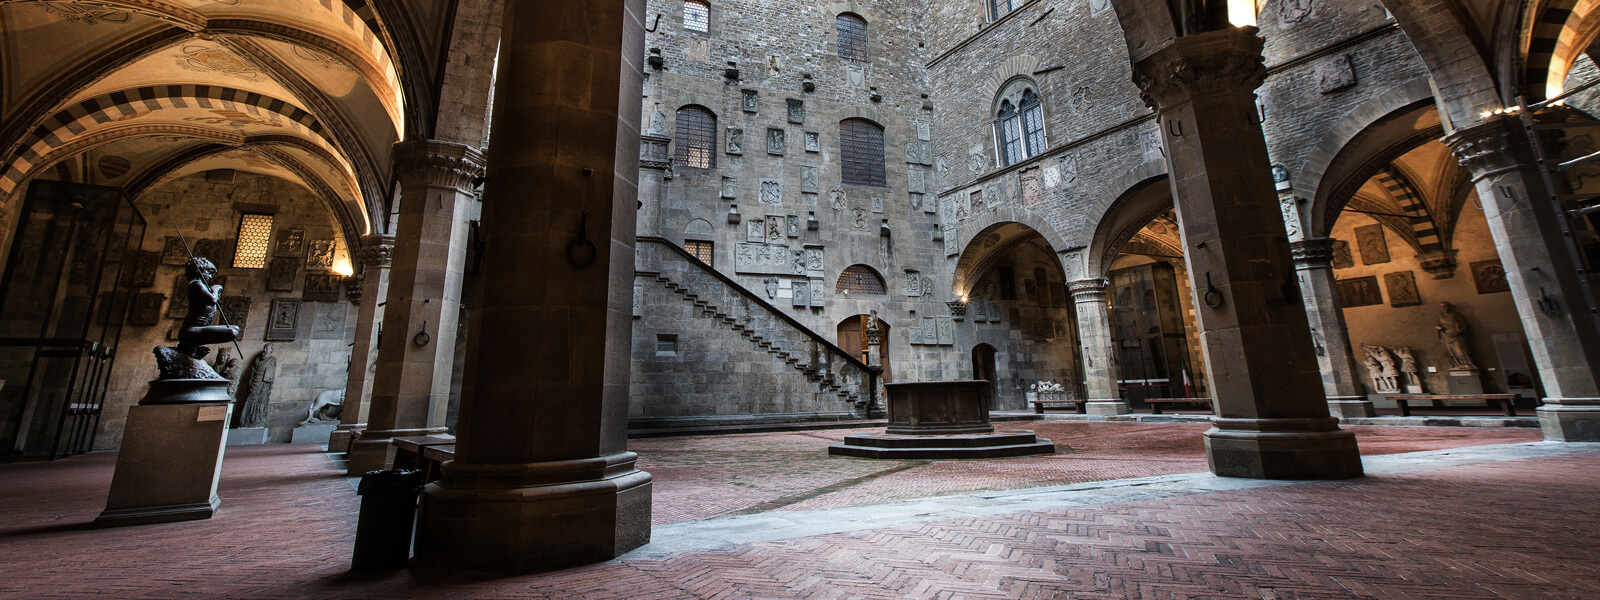 Cortile interno di un famoso palazzo storico di Firenze